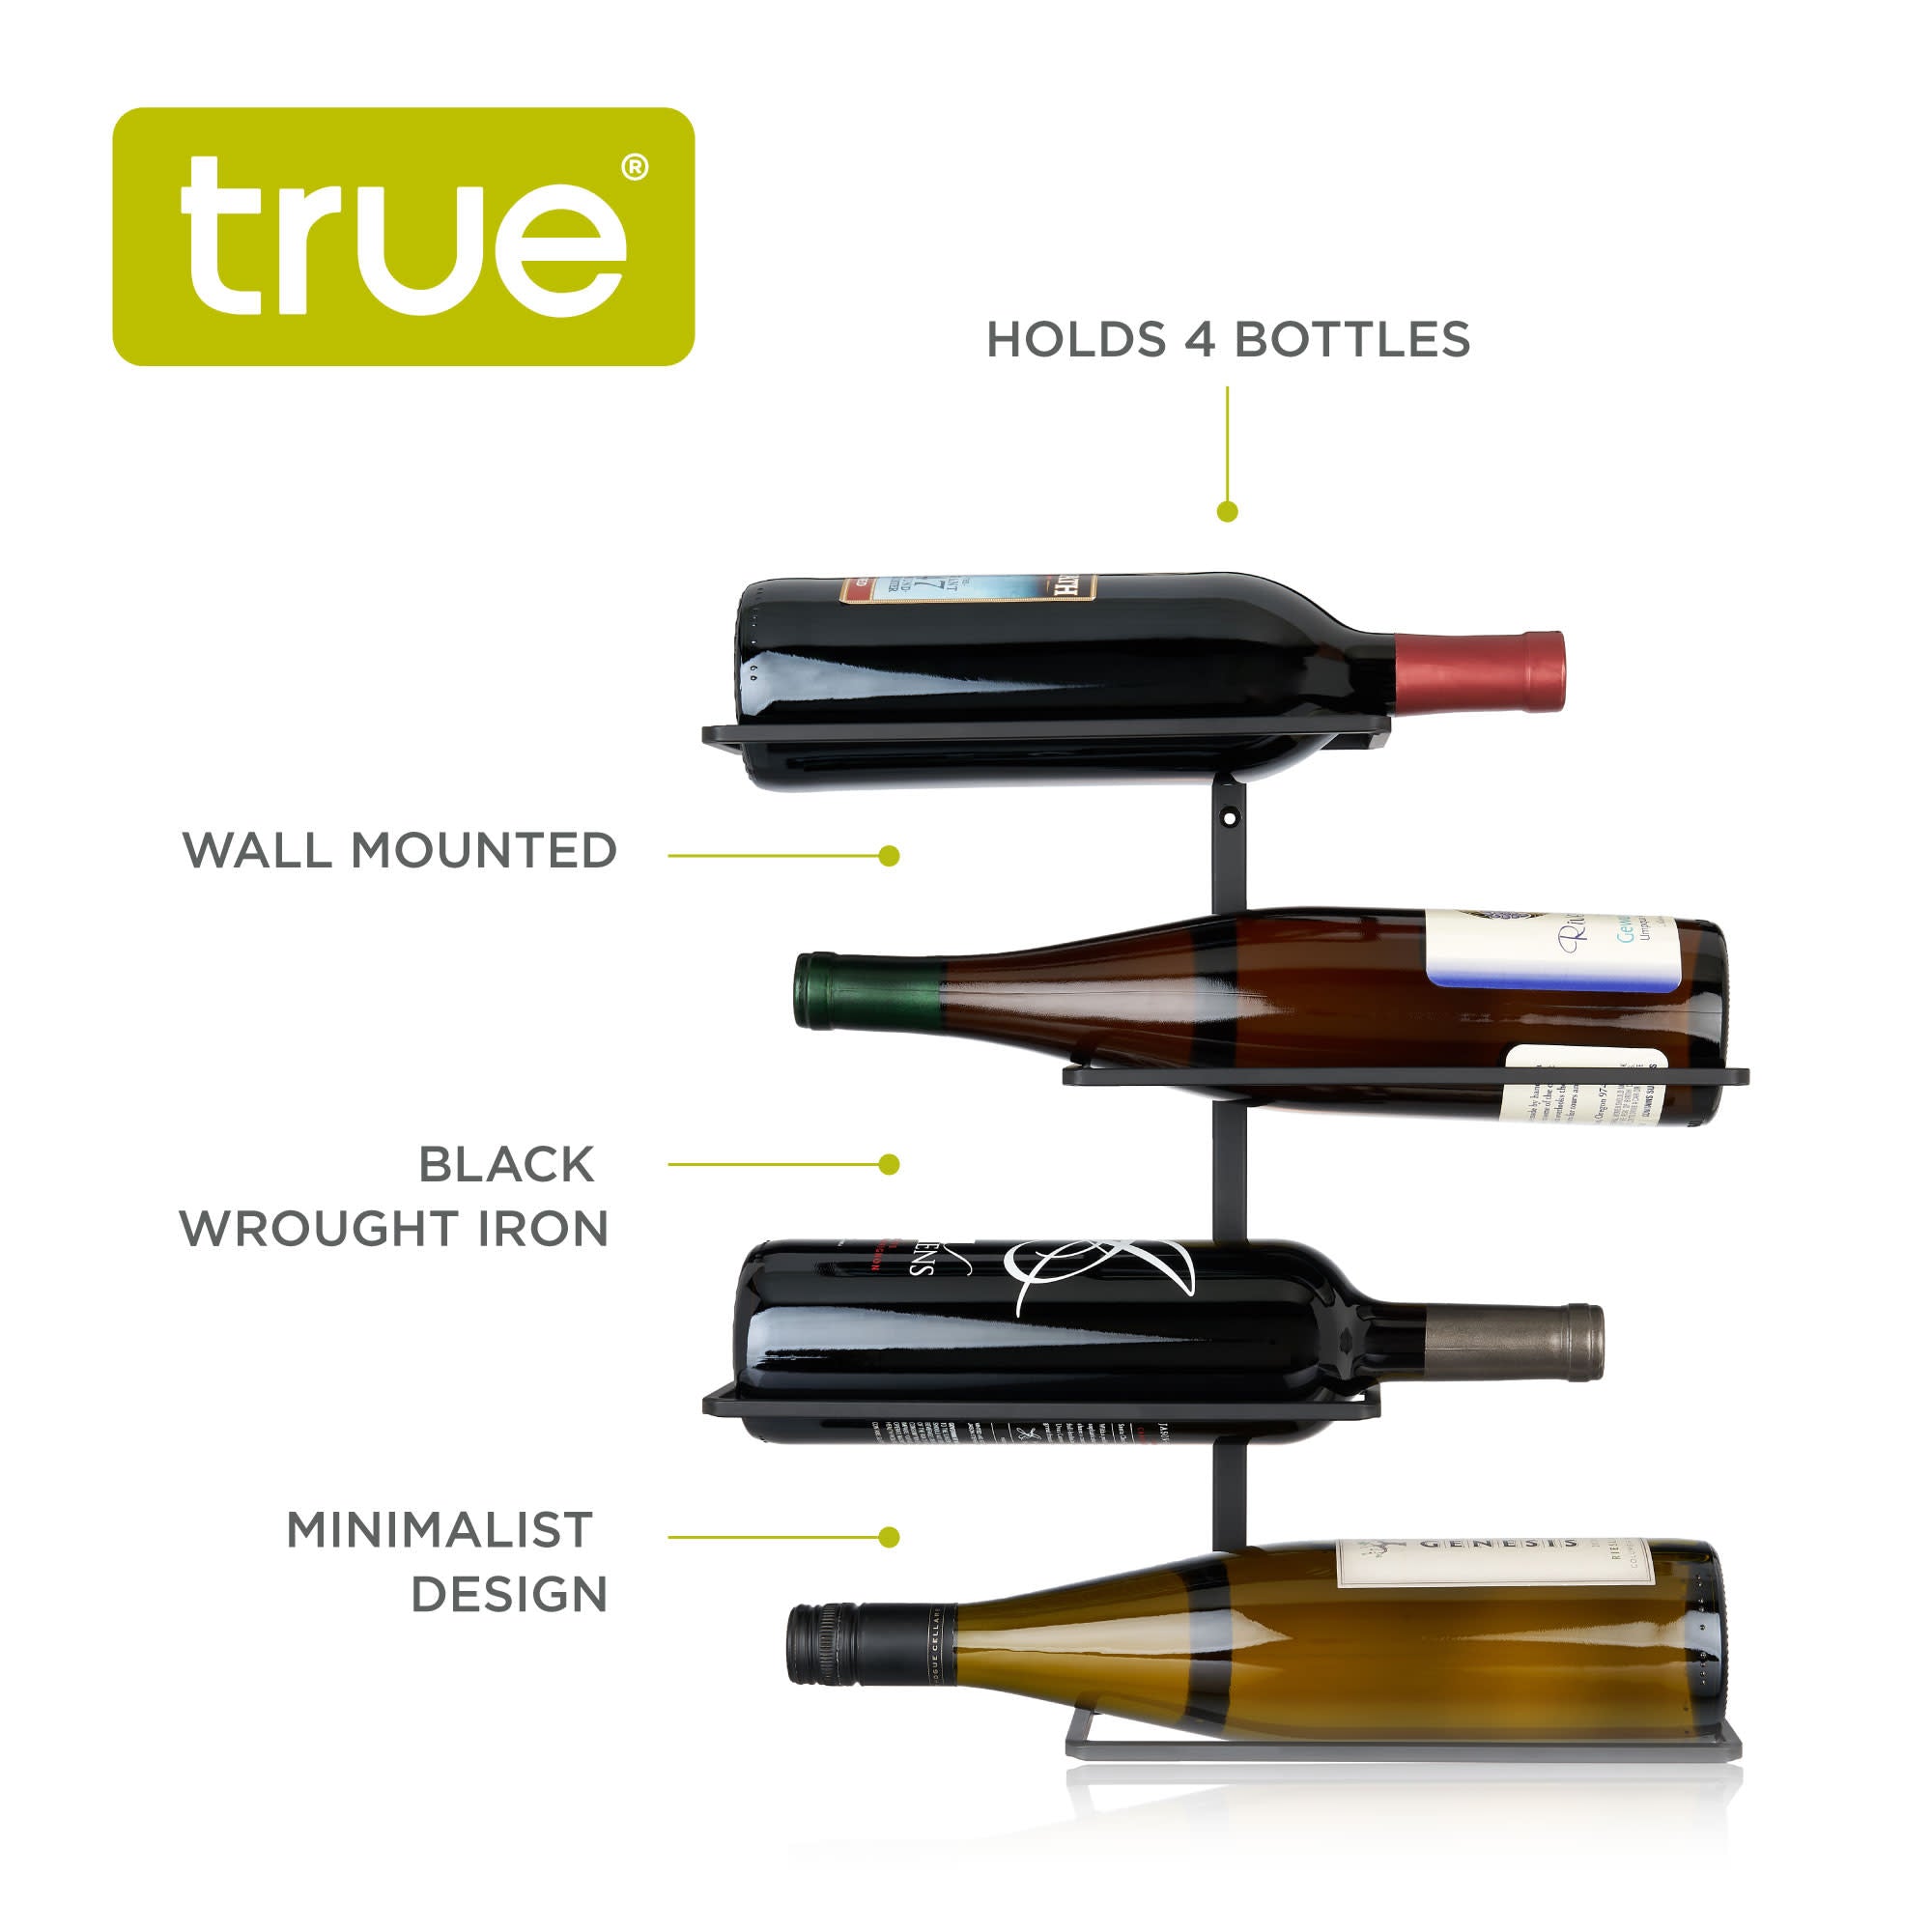 Four Bottle Wall Mounted Wine Rack by True (7688) Wine Accessories True